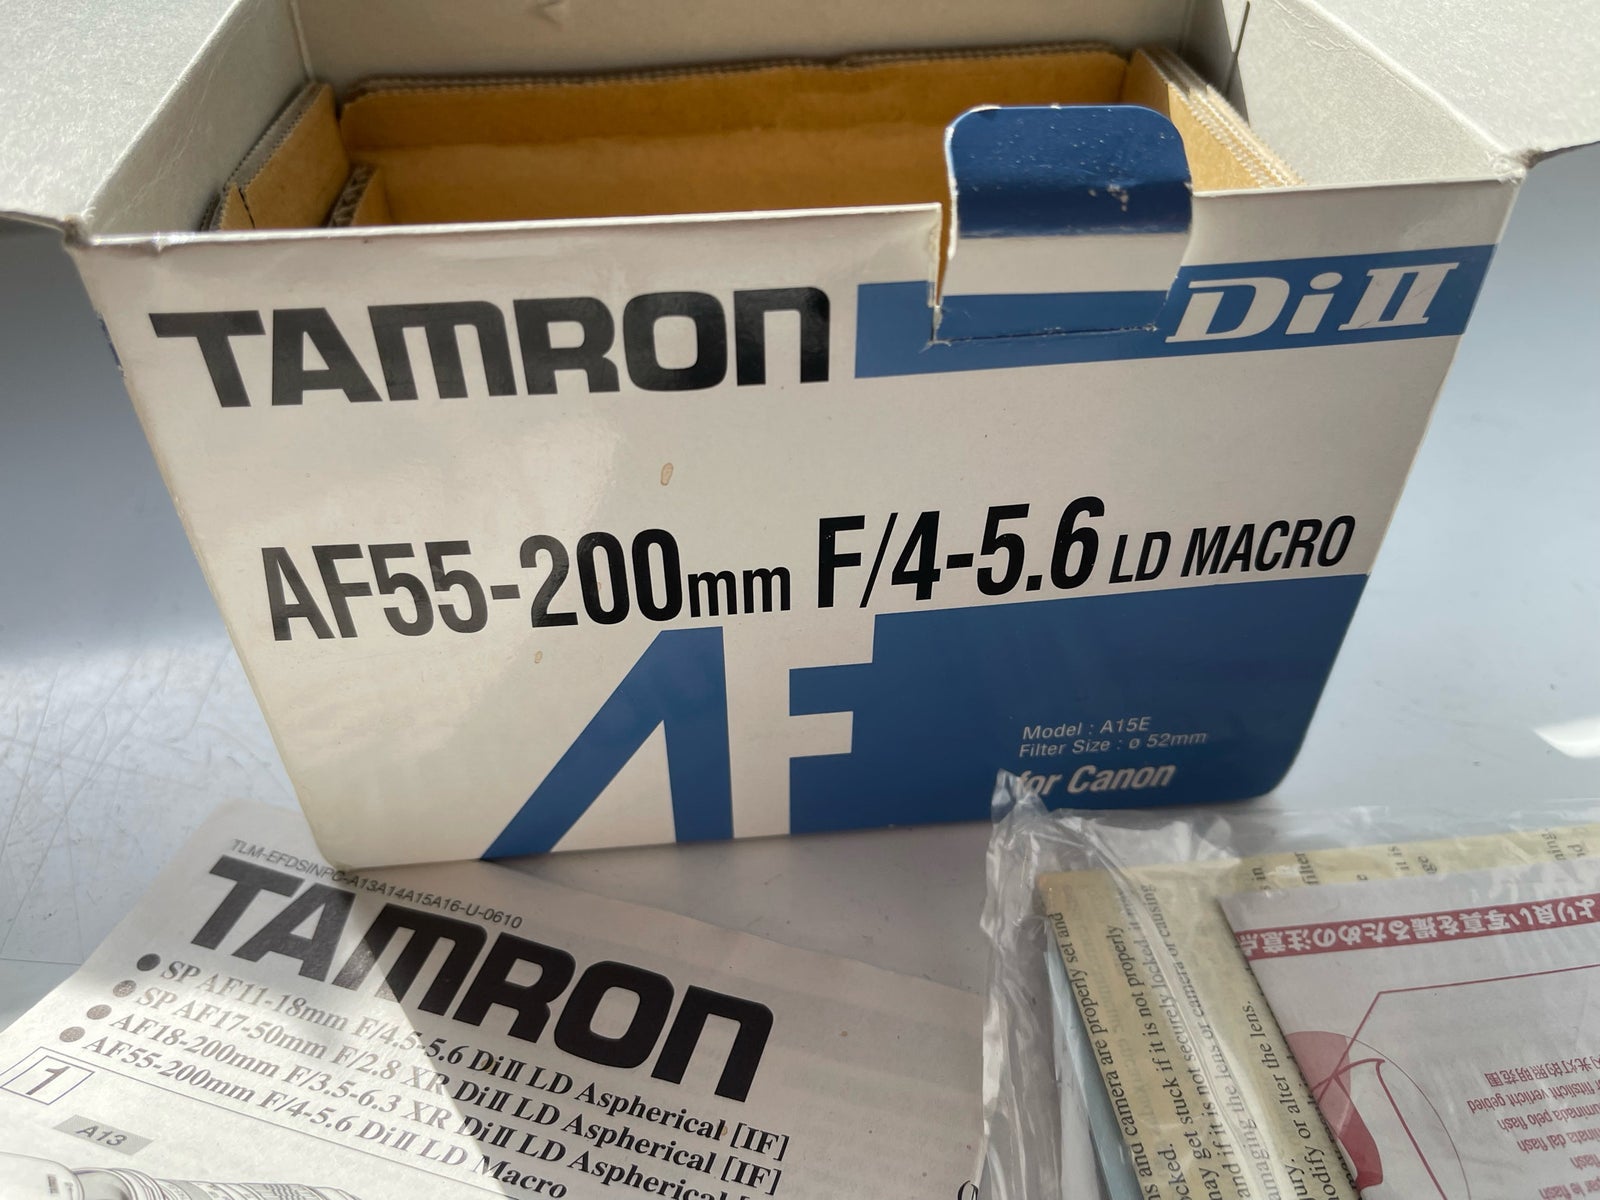 Macro, Tamron, Af55-200mm F/4-5.6 LD Macro